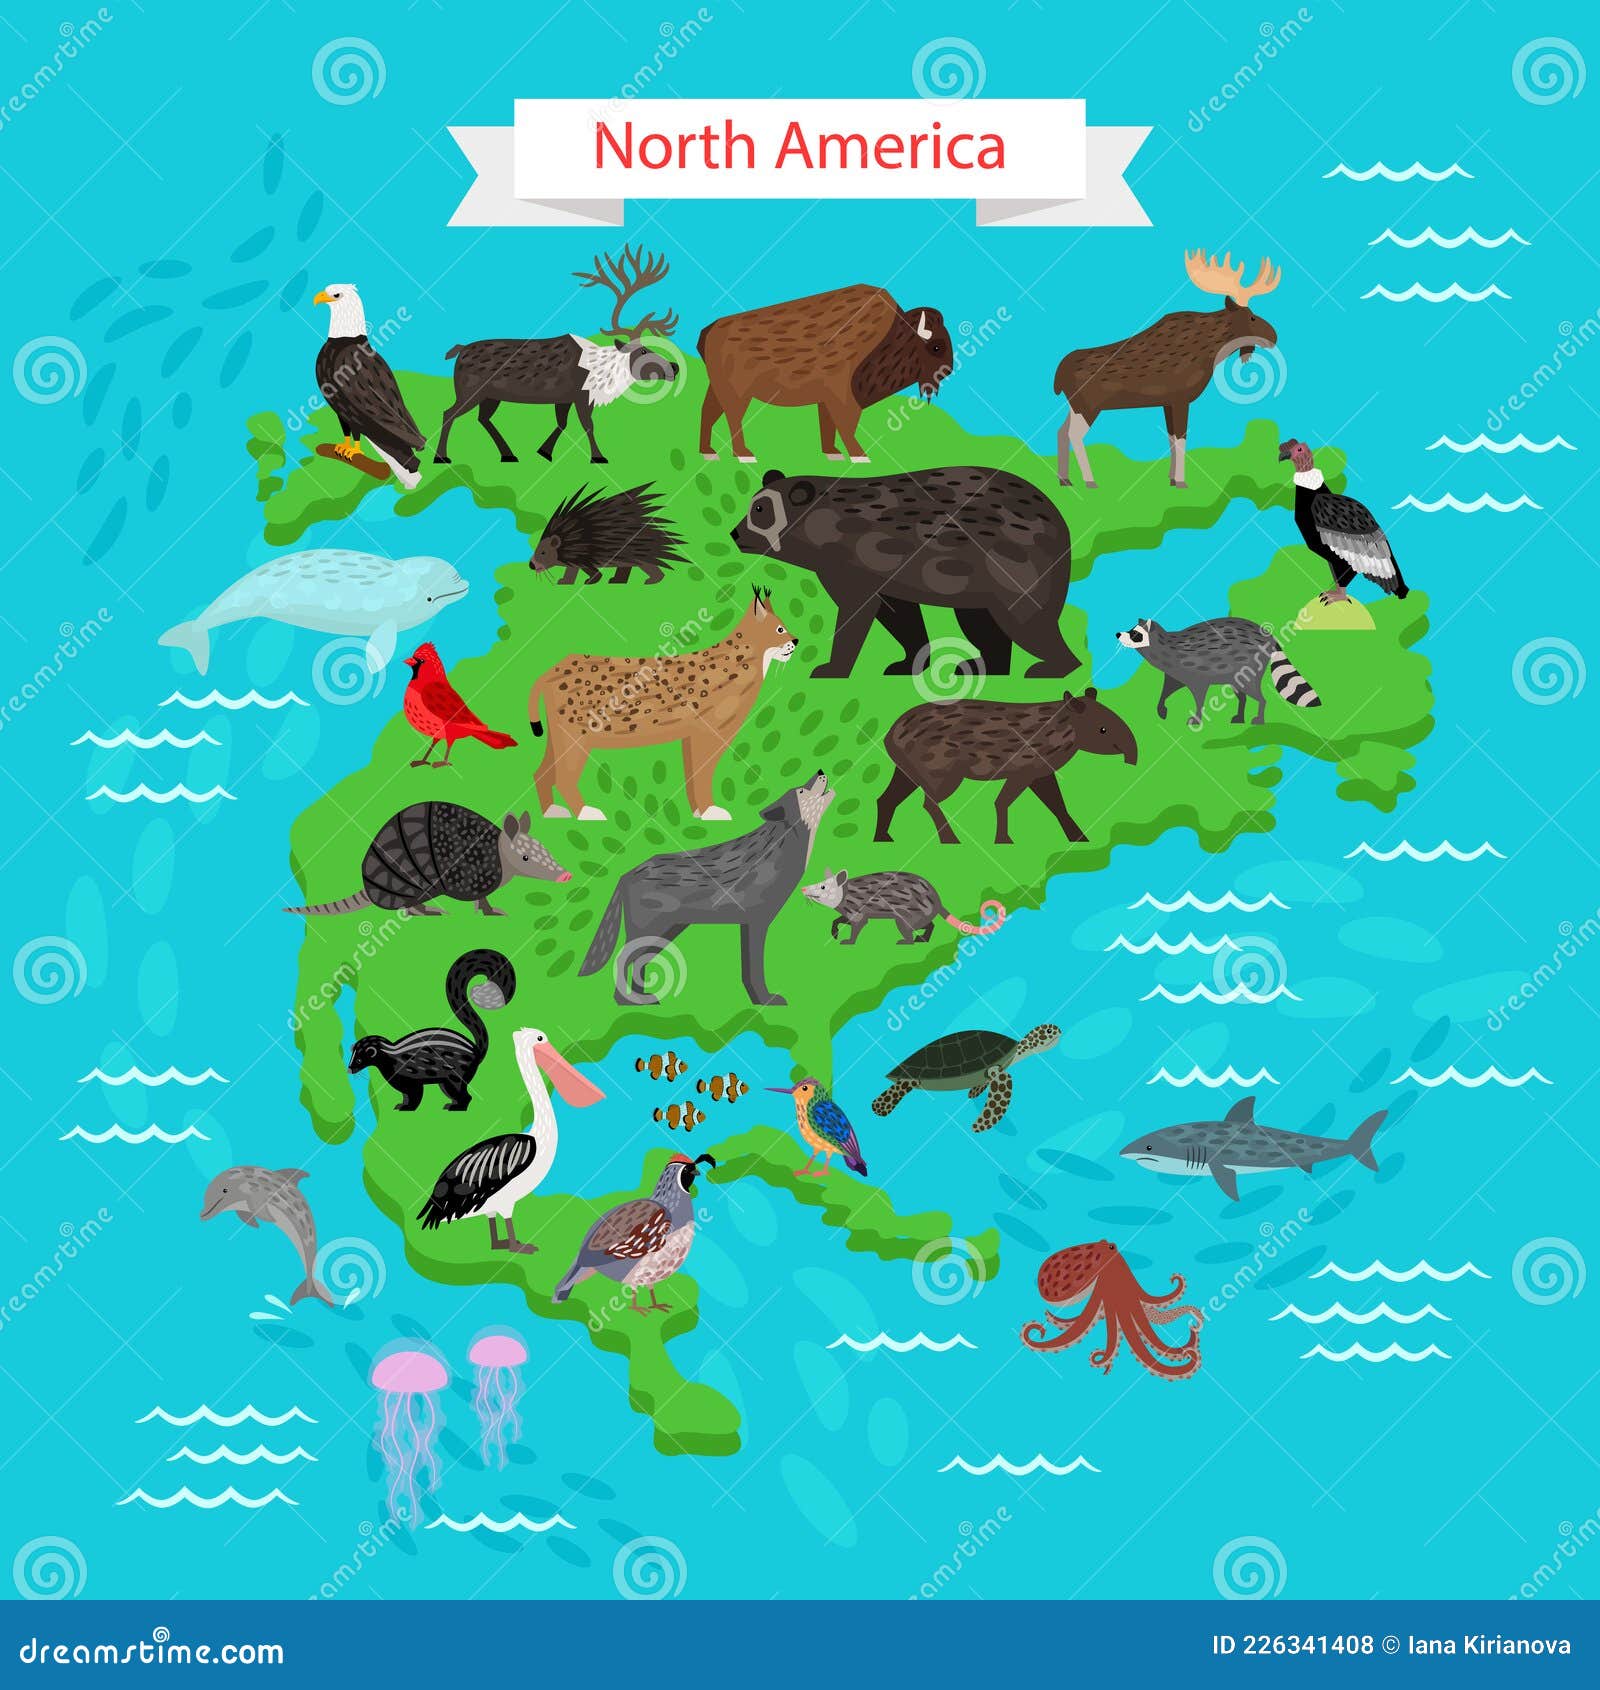 Животный мир материка северная америка. Карта Северной Америки с животными. Северная Америка для детей с животными. Животный мир Северной Америки на карте. Карта животных и растений Северной Америки.